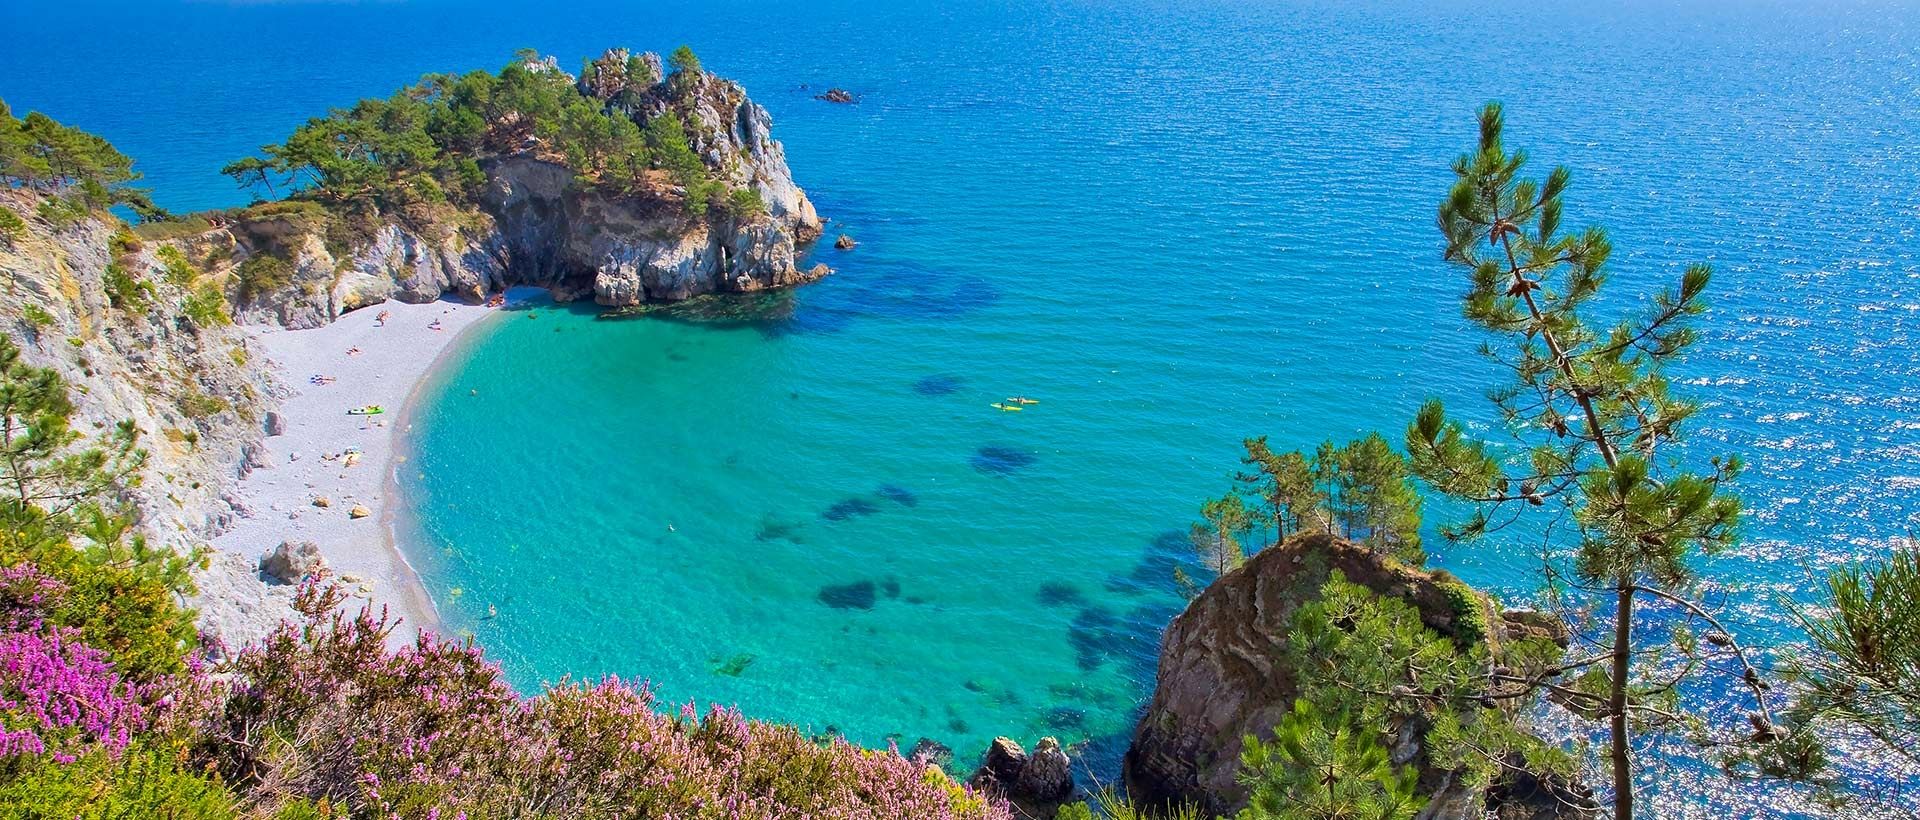 Entdecken Sie mit Sandaya die schönsten Inseln Frankreichs!